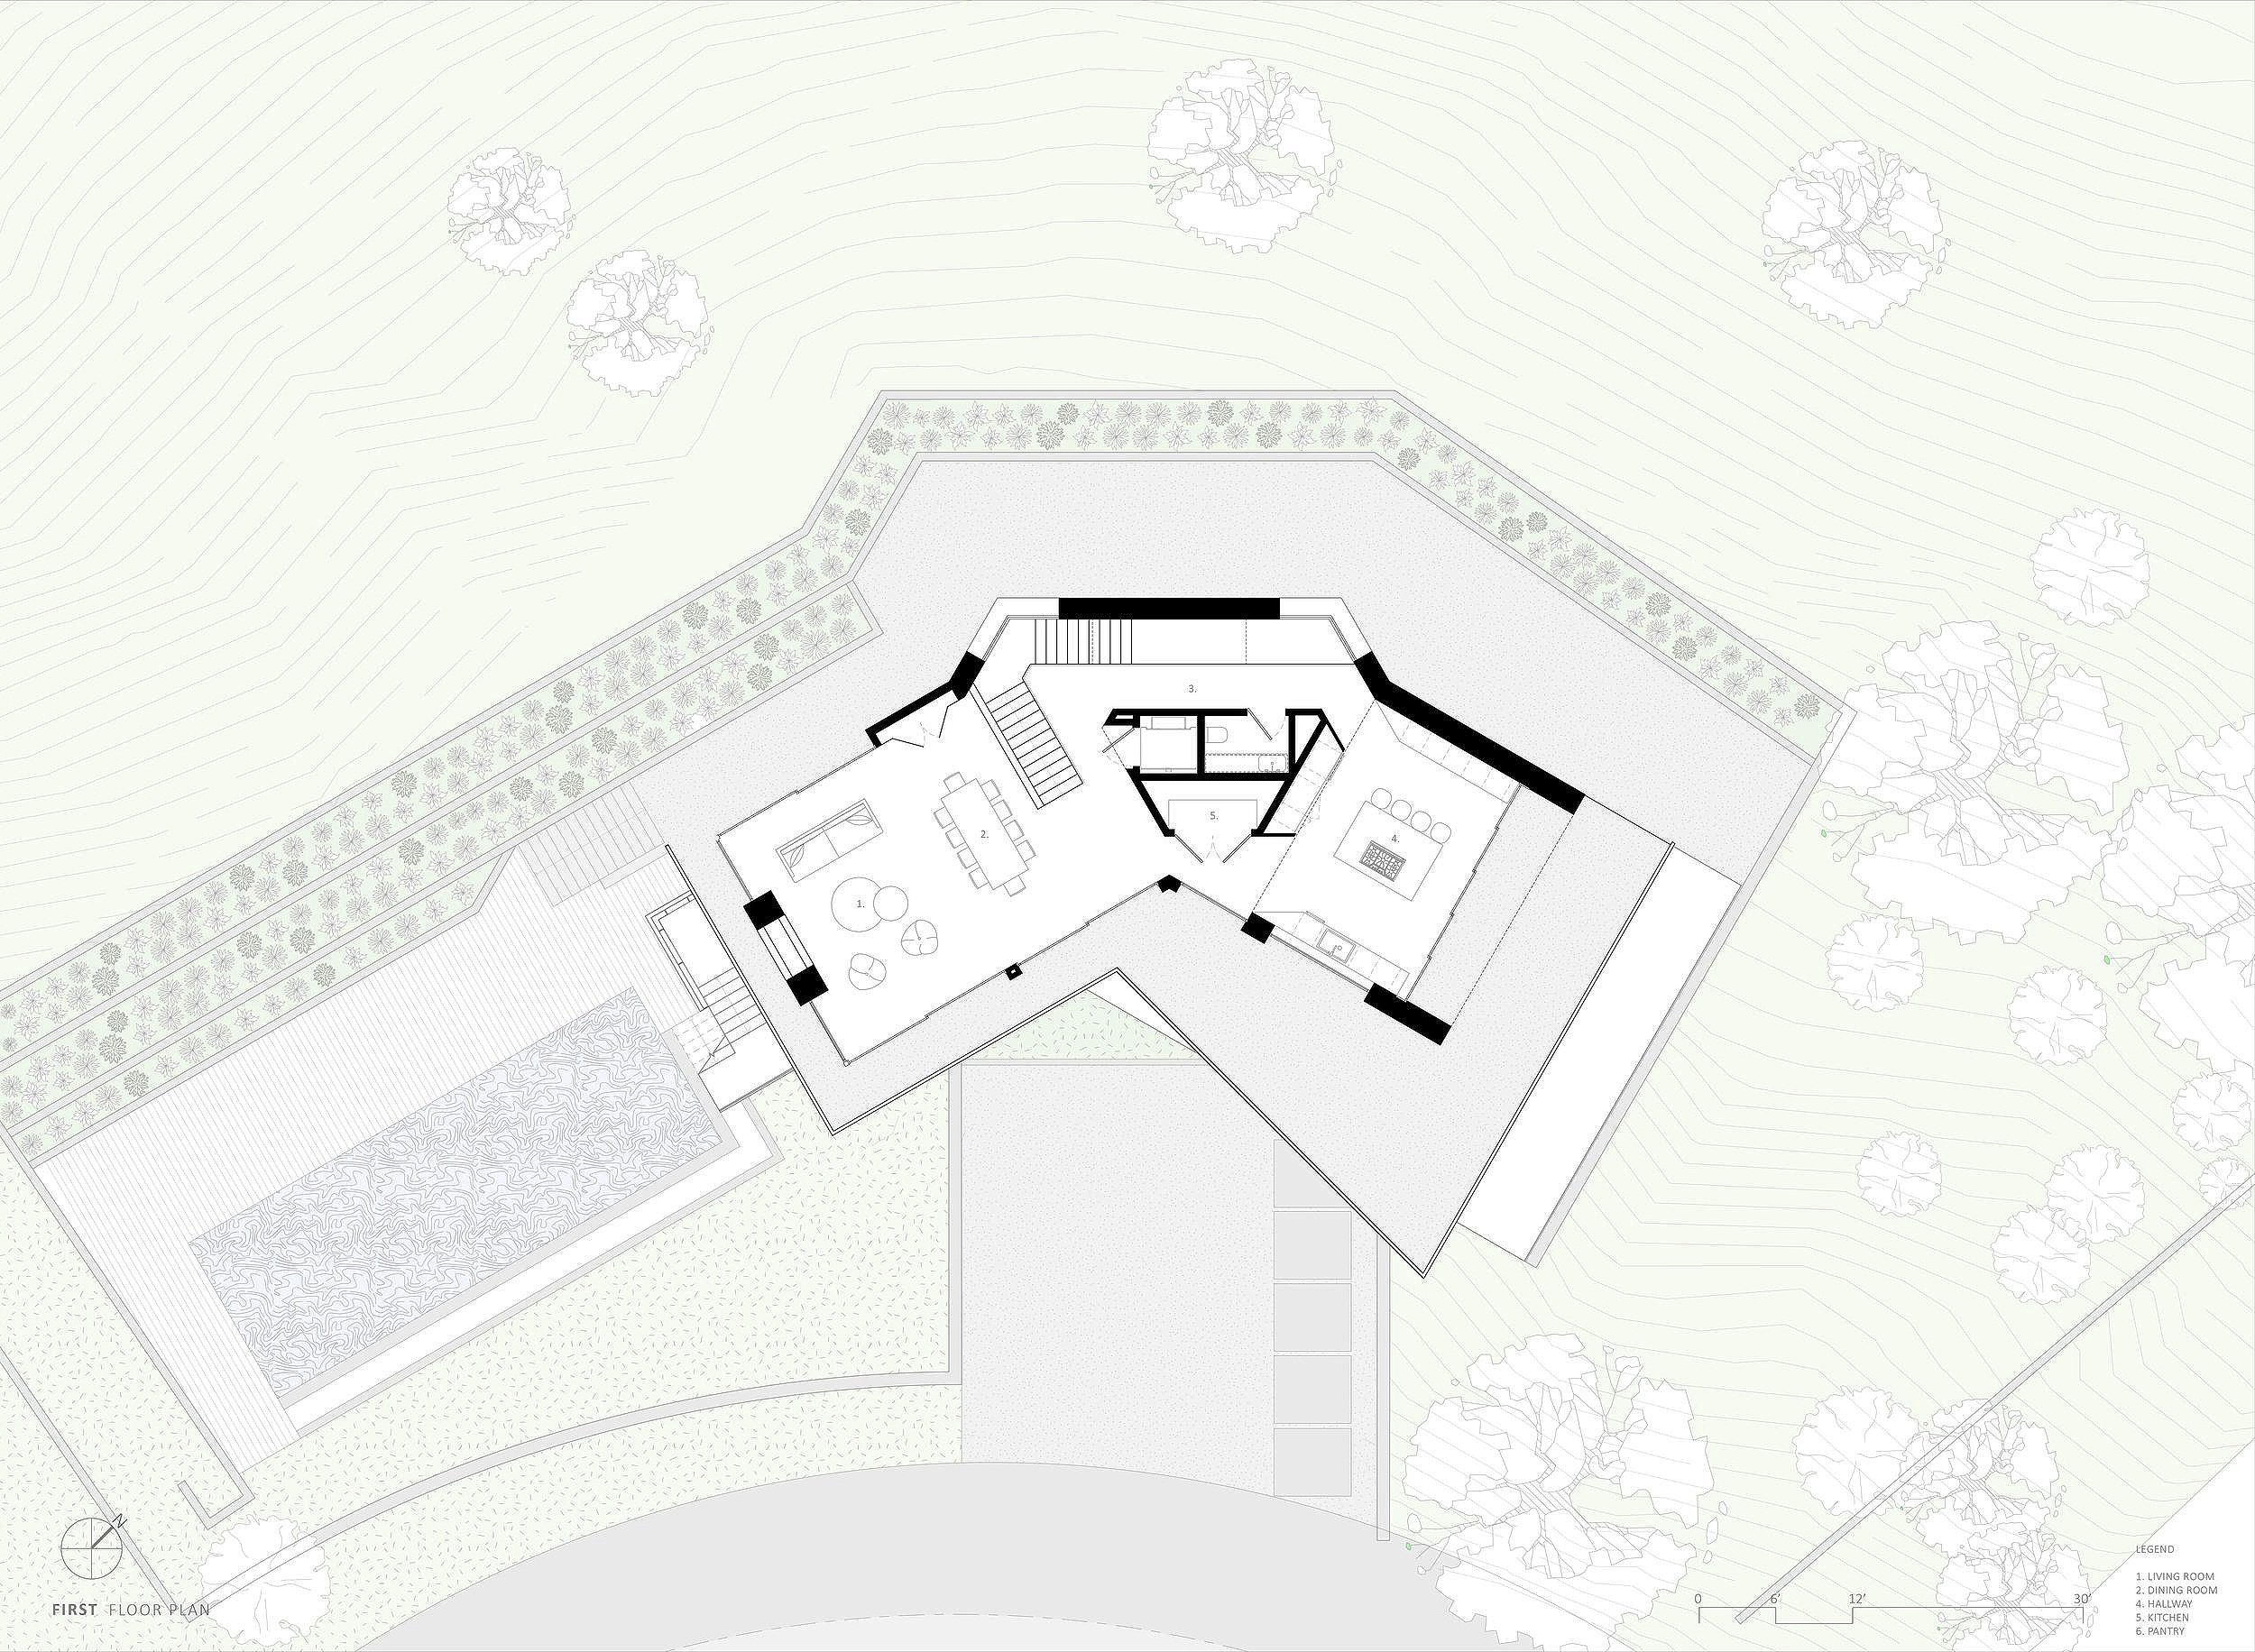 bspk-design-architecture-california-4450-residenital-treehouse-first+floor+plan.jpg